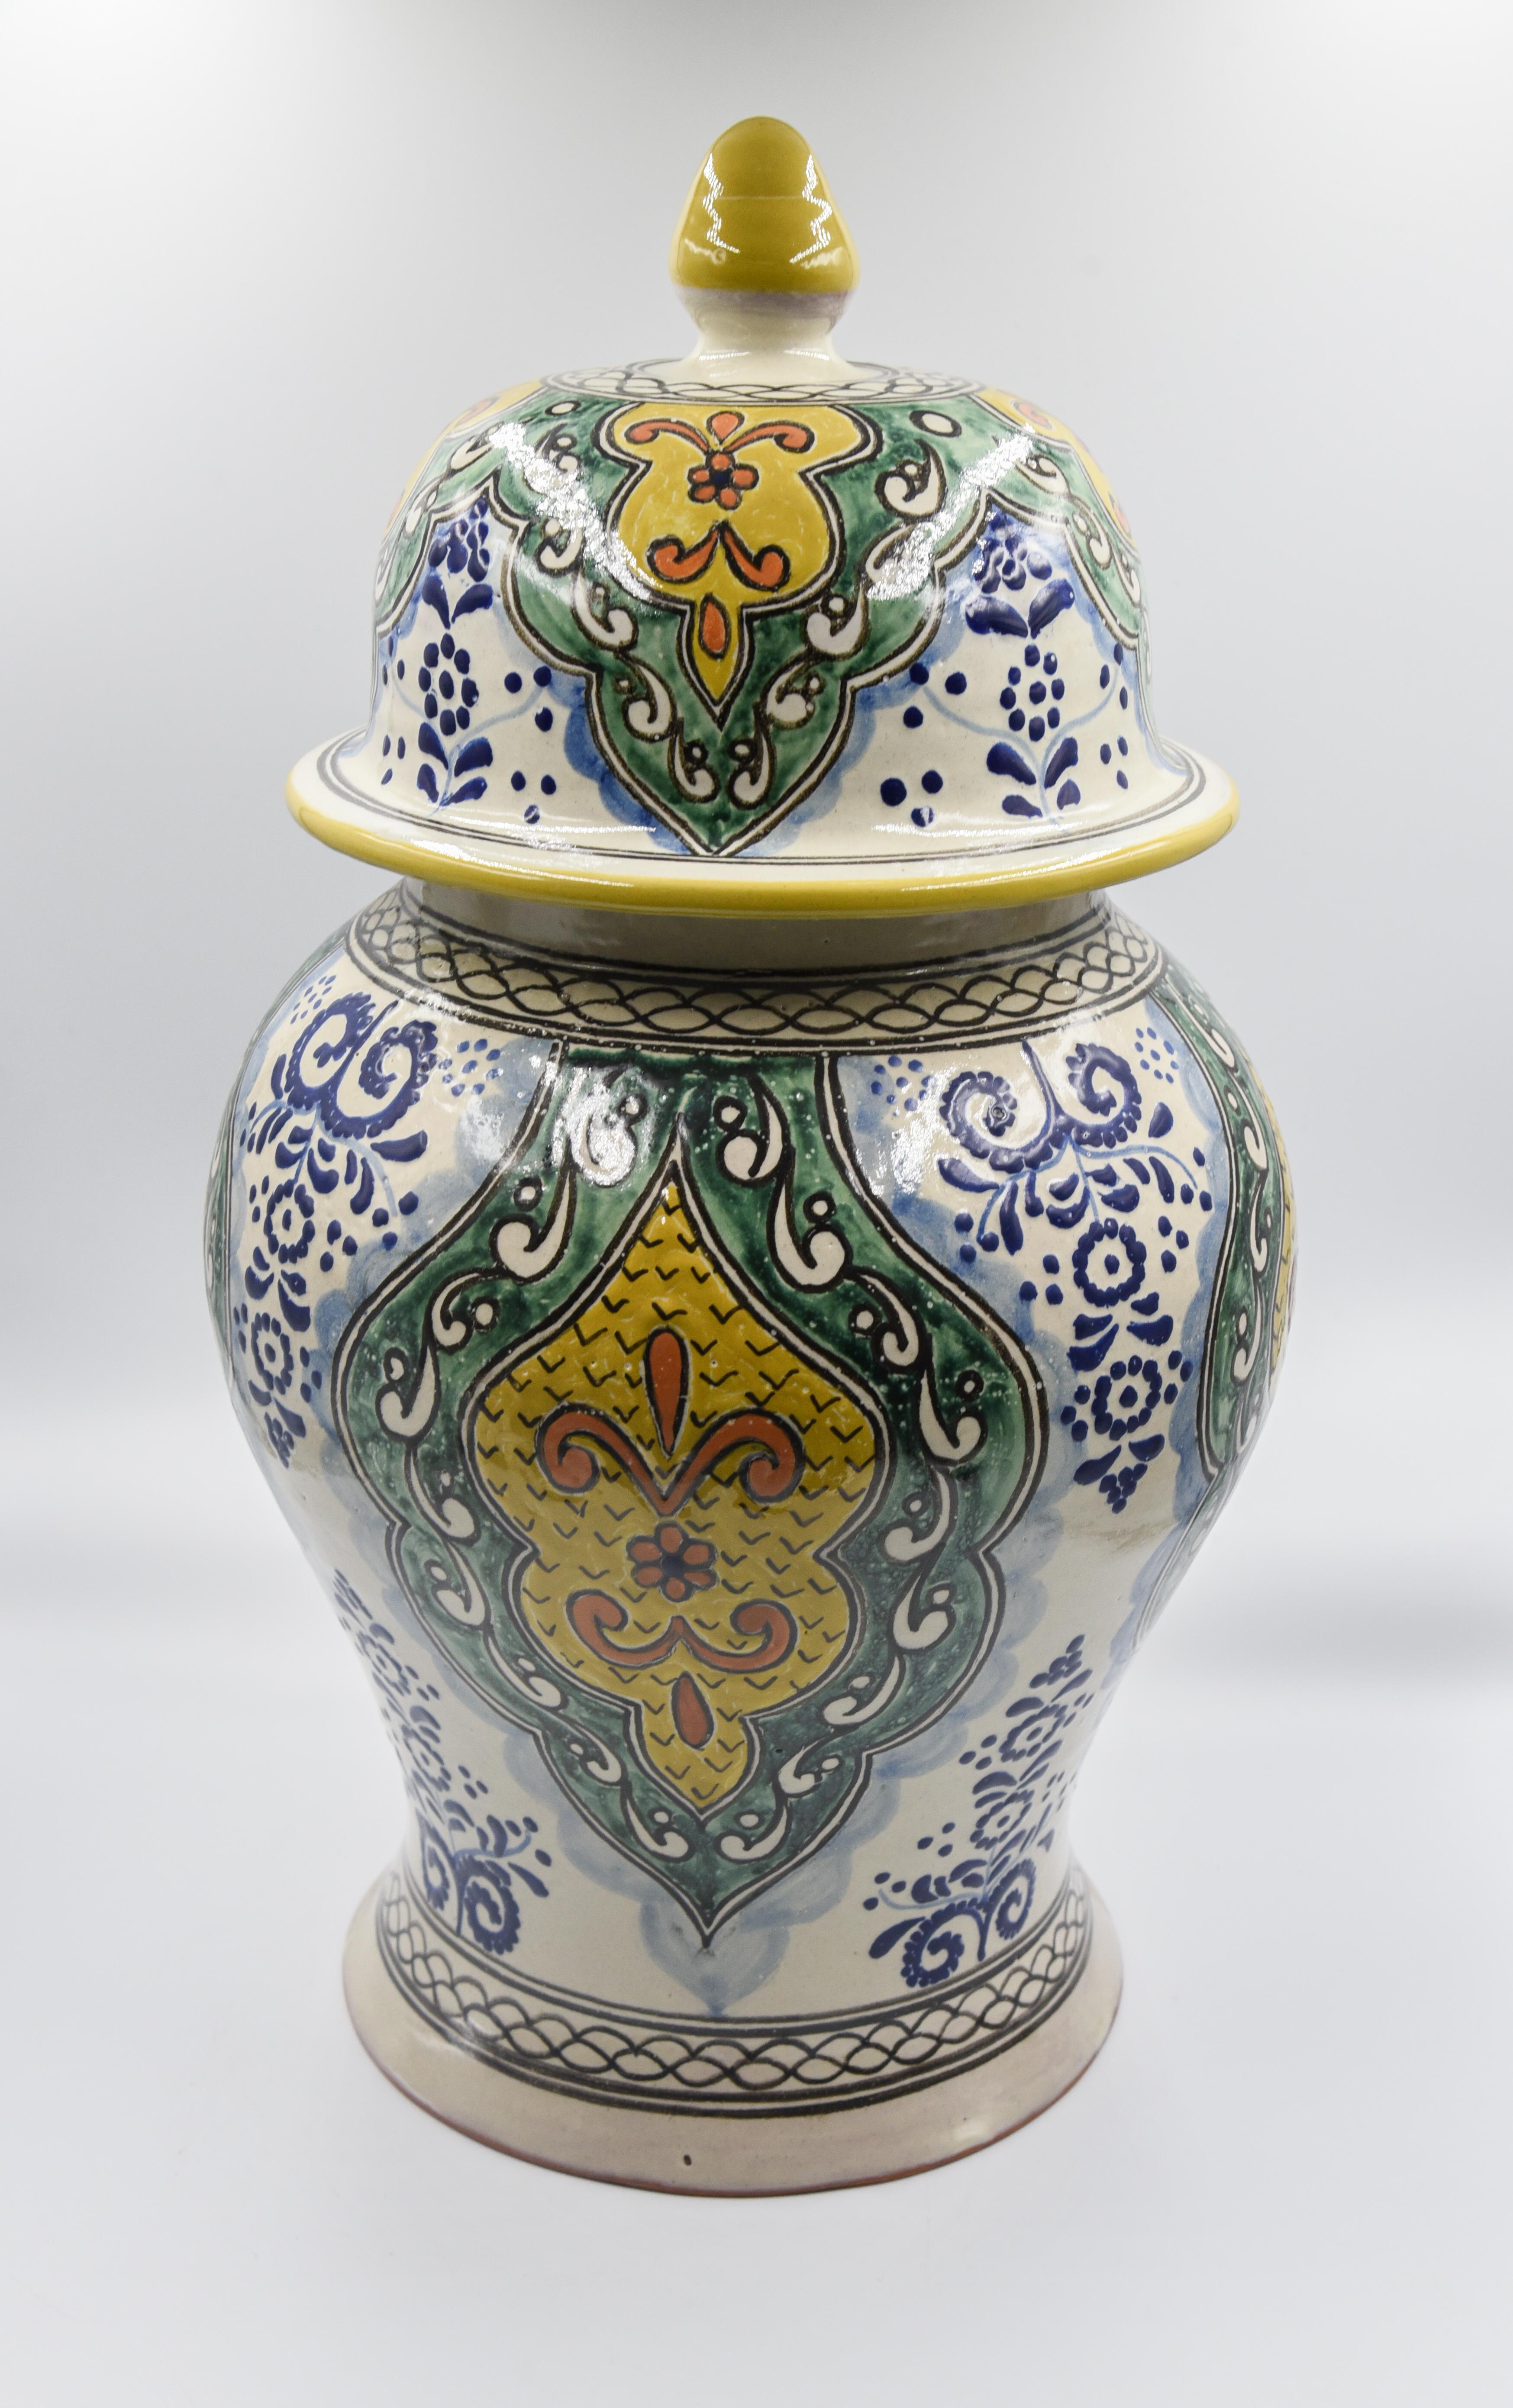 Authentische Talavera dekorative Vase Volkskunst Gefäß mexikanischen Keramik blau gelb (Spanisch Kolonial)